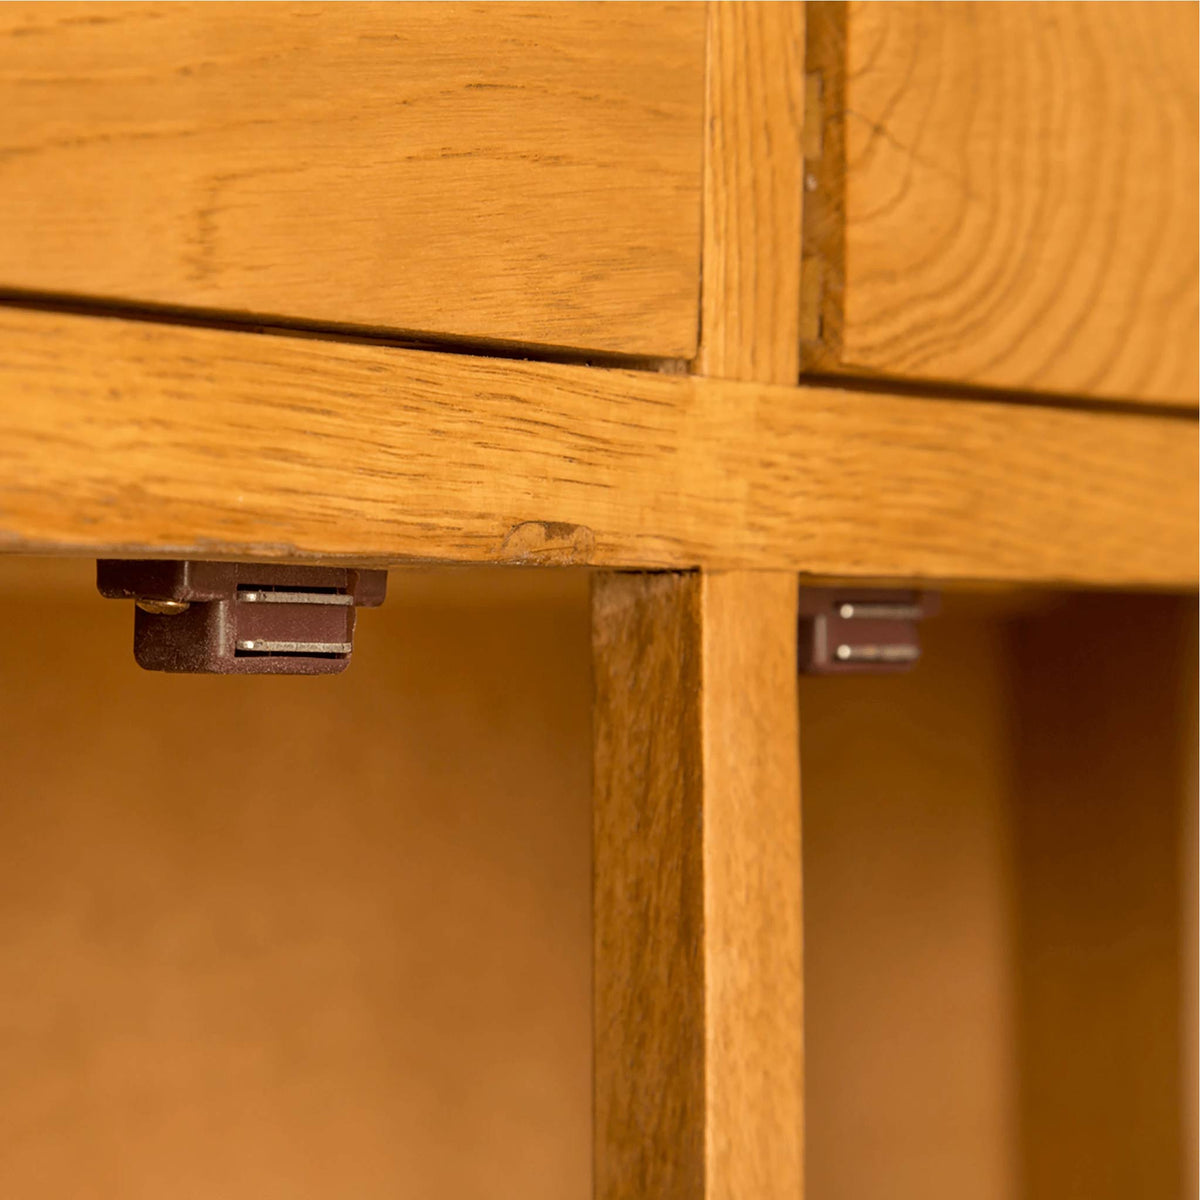 Lanner Oak Mini Sideboard cupboard cross section view